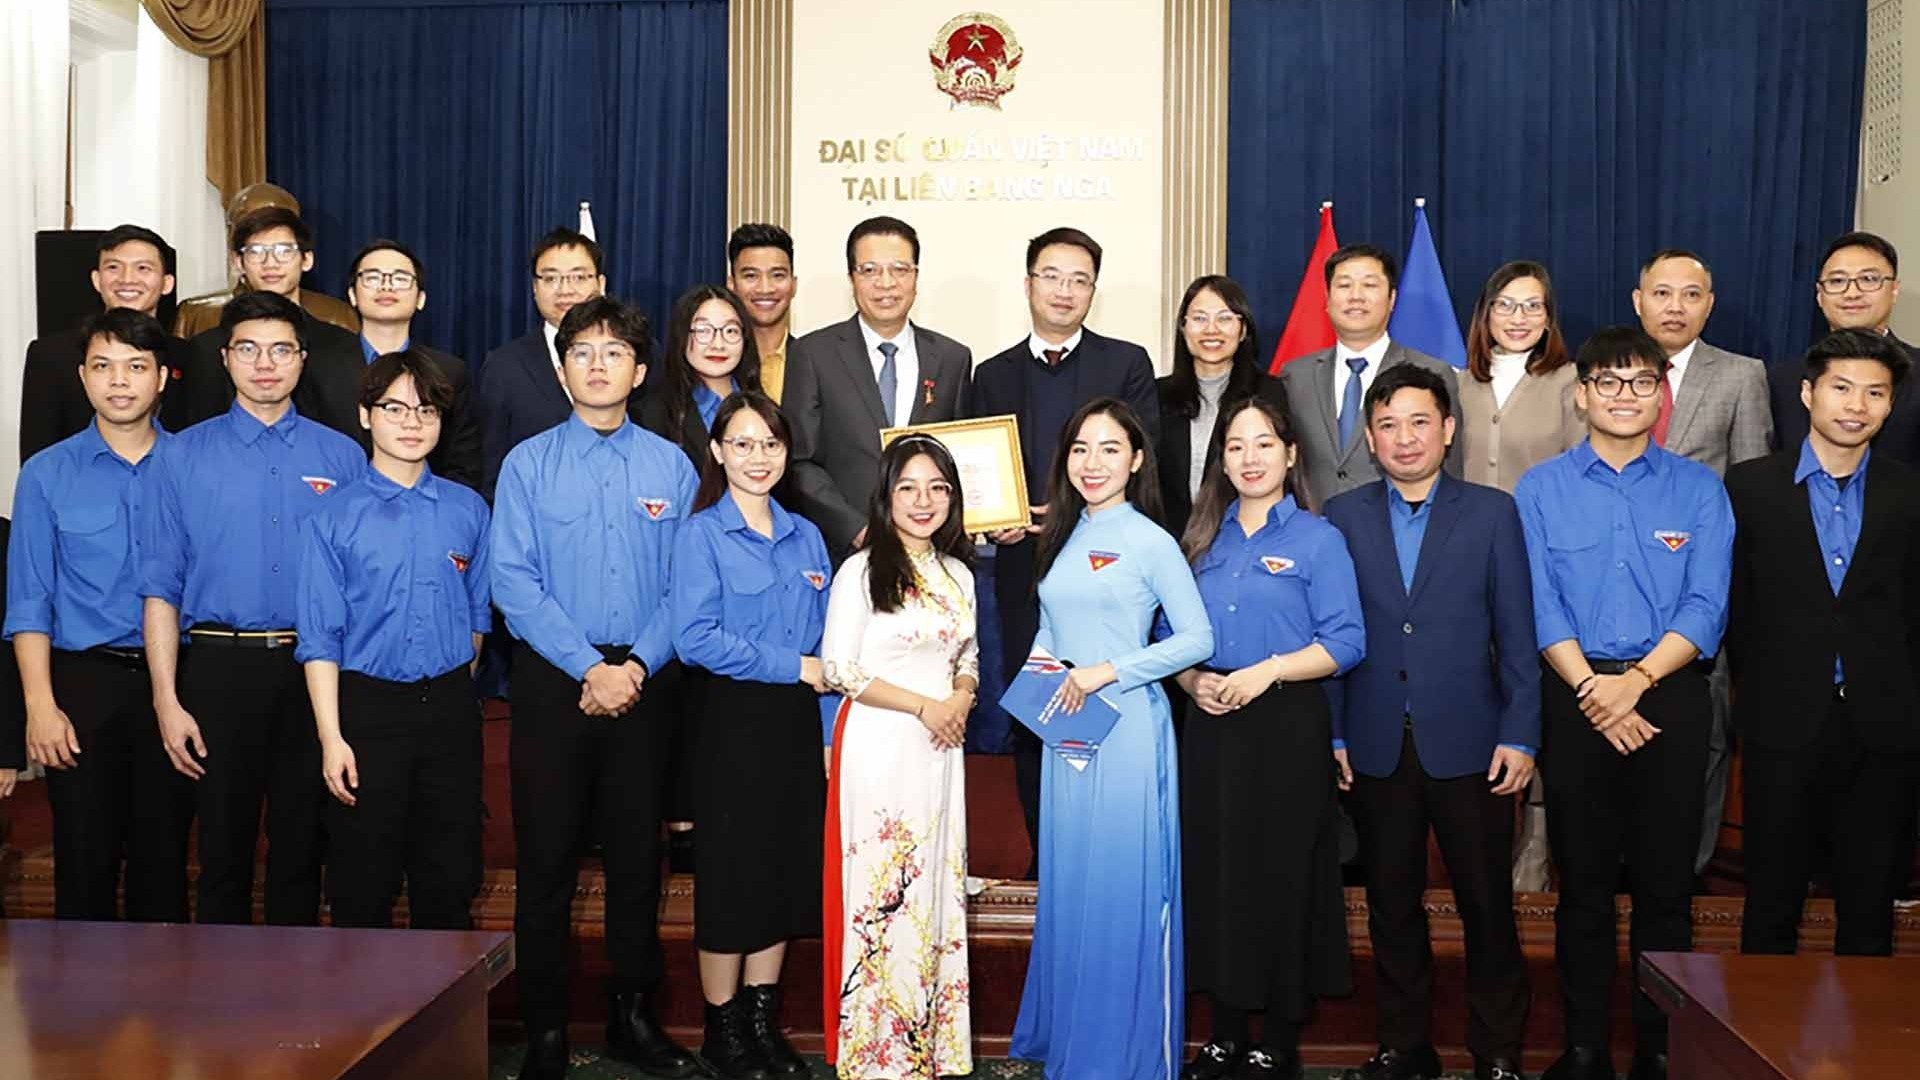 Trao kỷ niệm chương ‘Vì thế hệ trẻ’ tặng Đại sứ Việt Nam tại Nga Đặng Minh Khôi